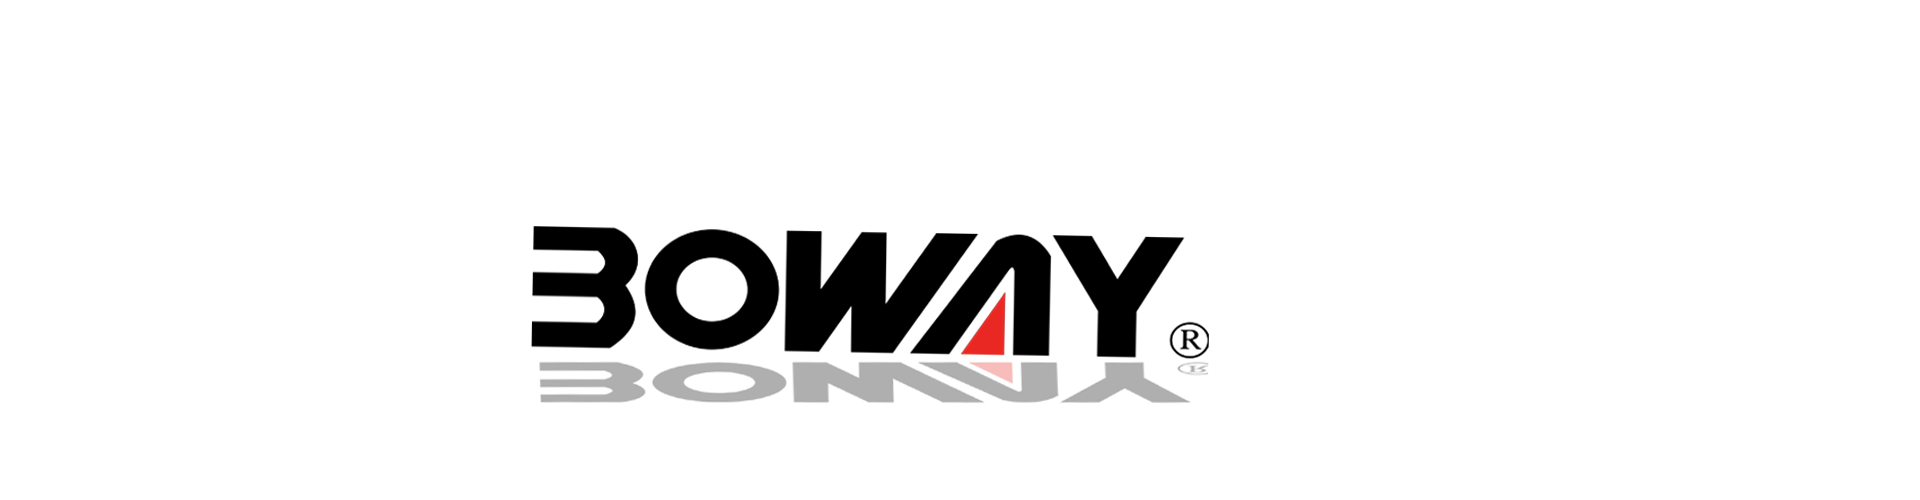 波威logo.png